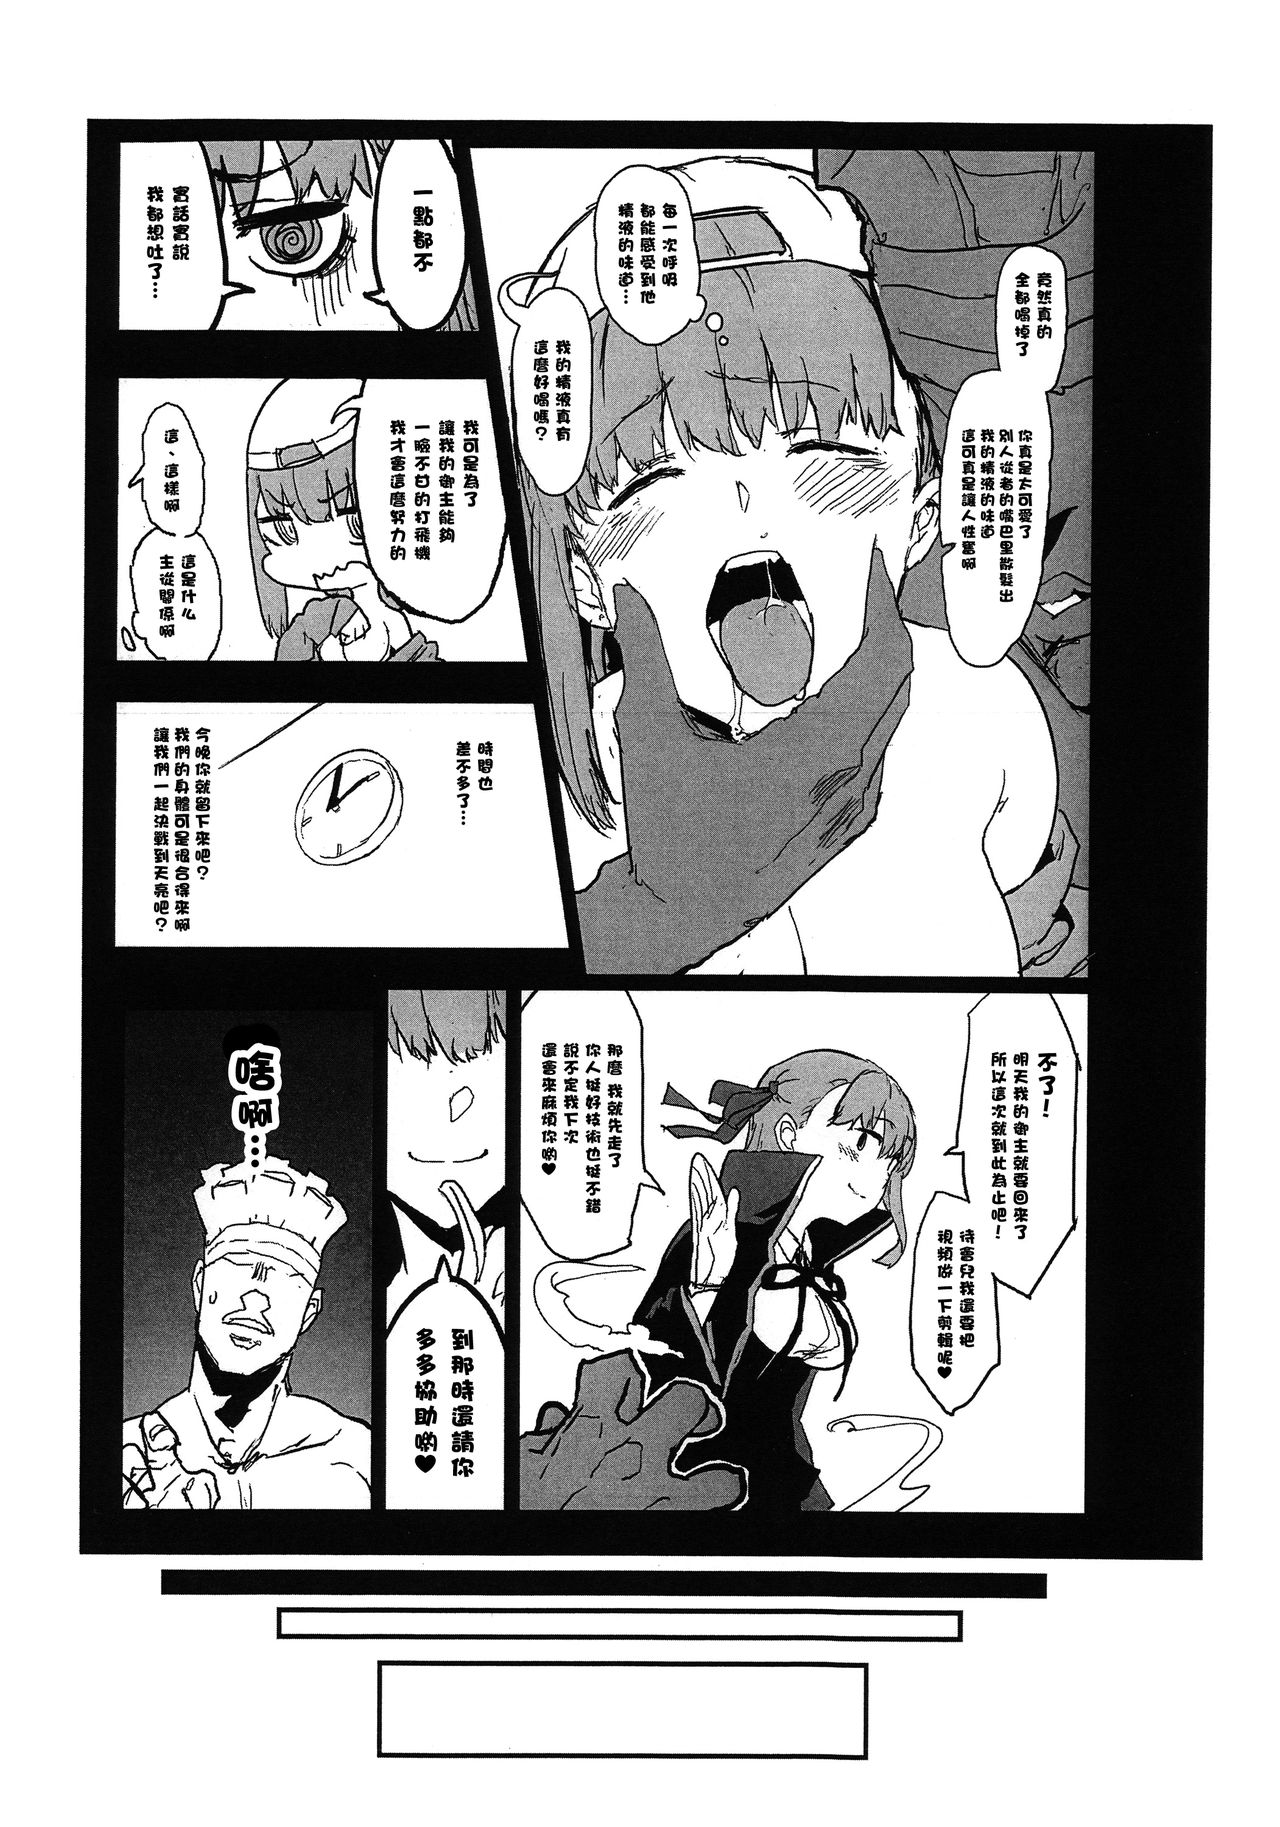 (COMIC1☆15) [んほぉおおおぉおおおおおお♥おっ♥おっ♥ (おおさわらさだお)] BBちゃんの寝取らせ映像を見ながらオナサポしてもらう本 (Fate/Grand Order) [中国翻訳]